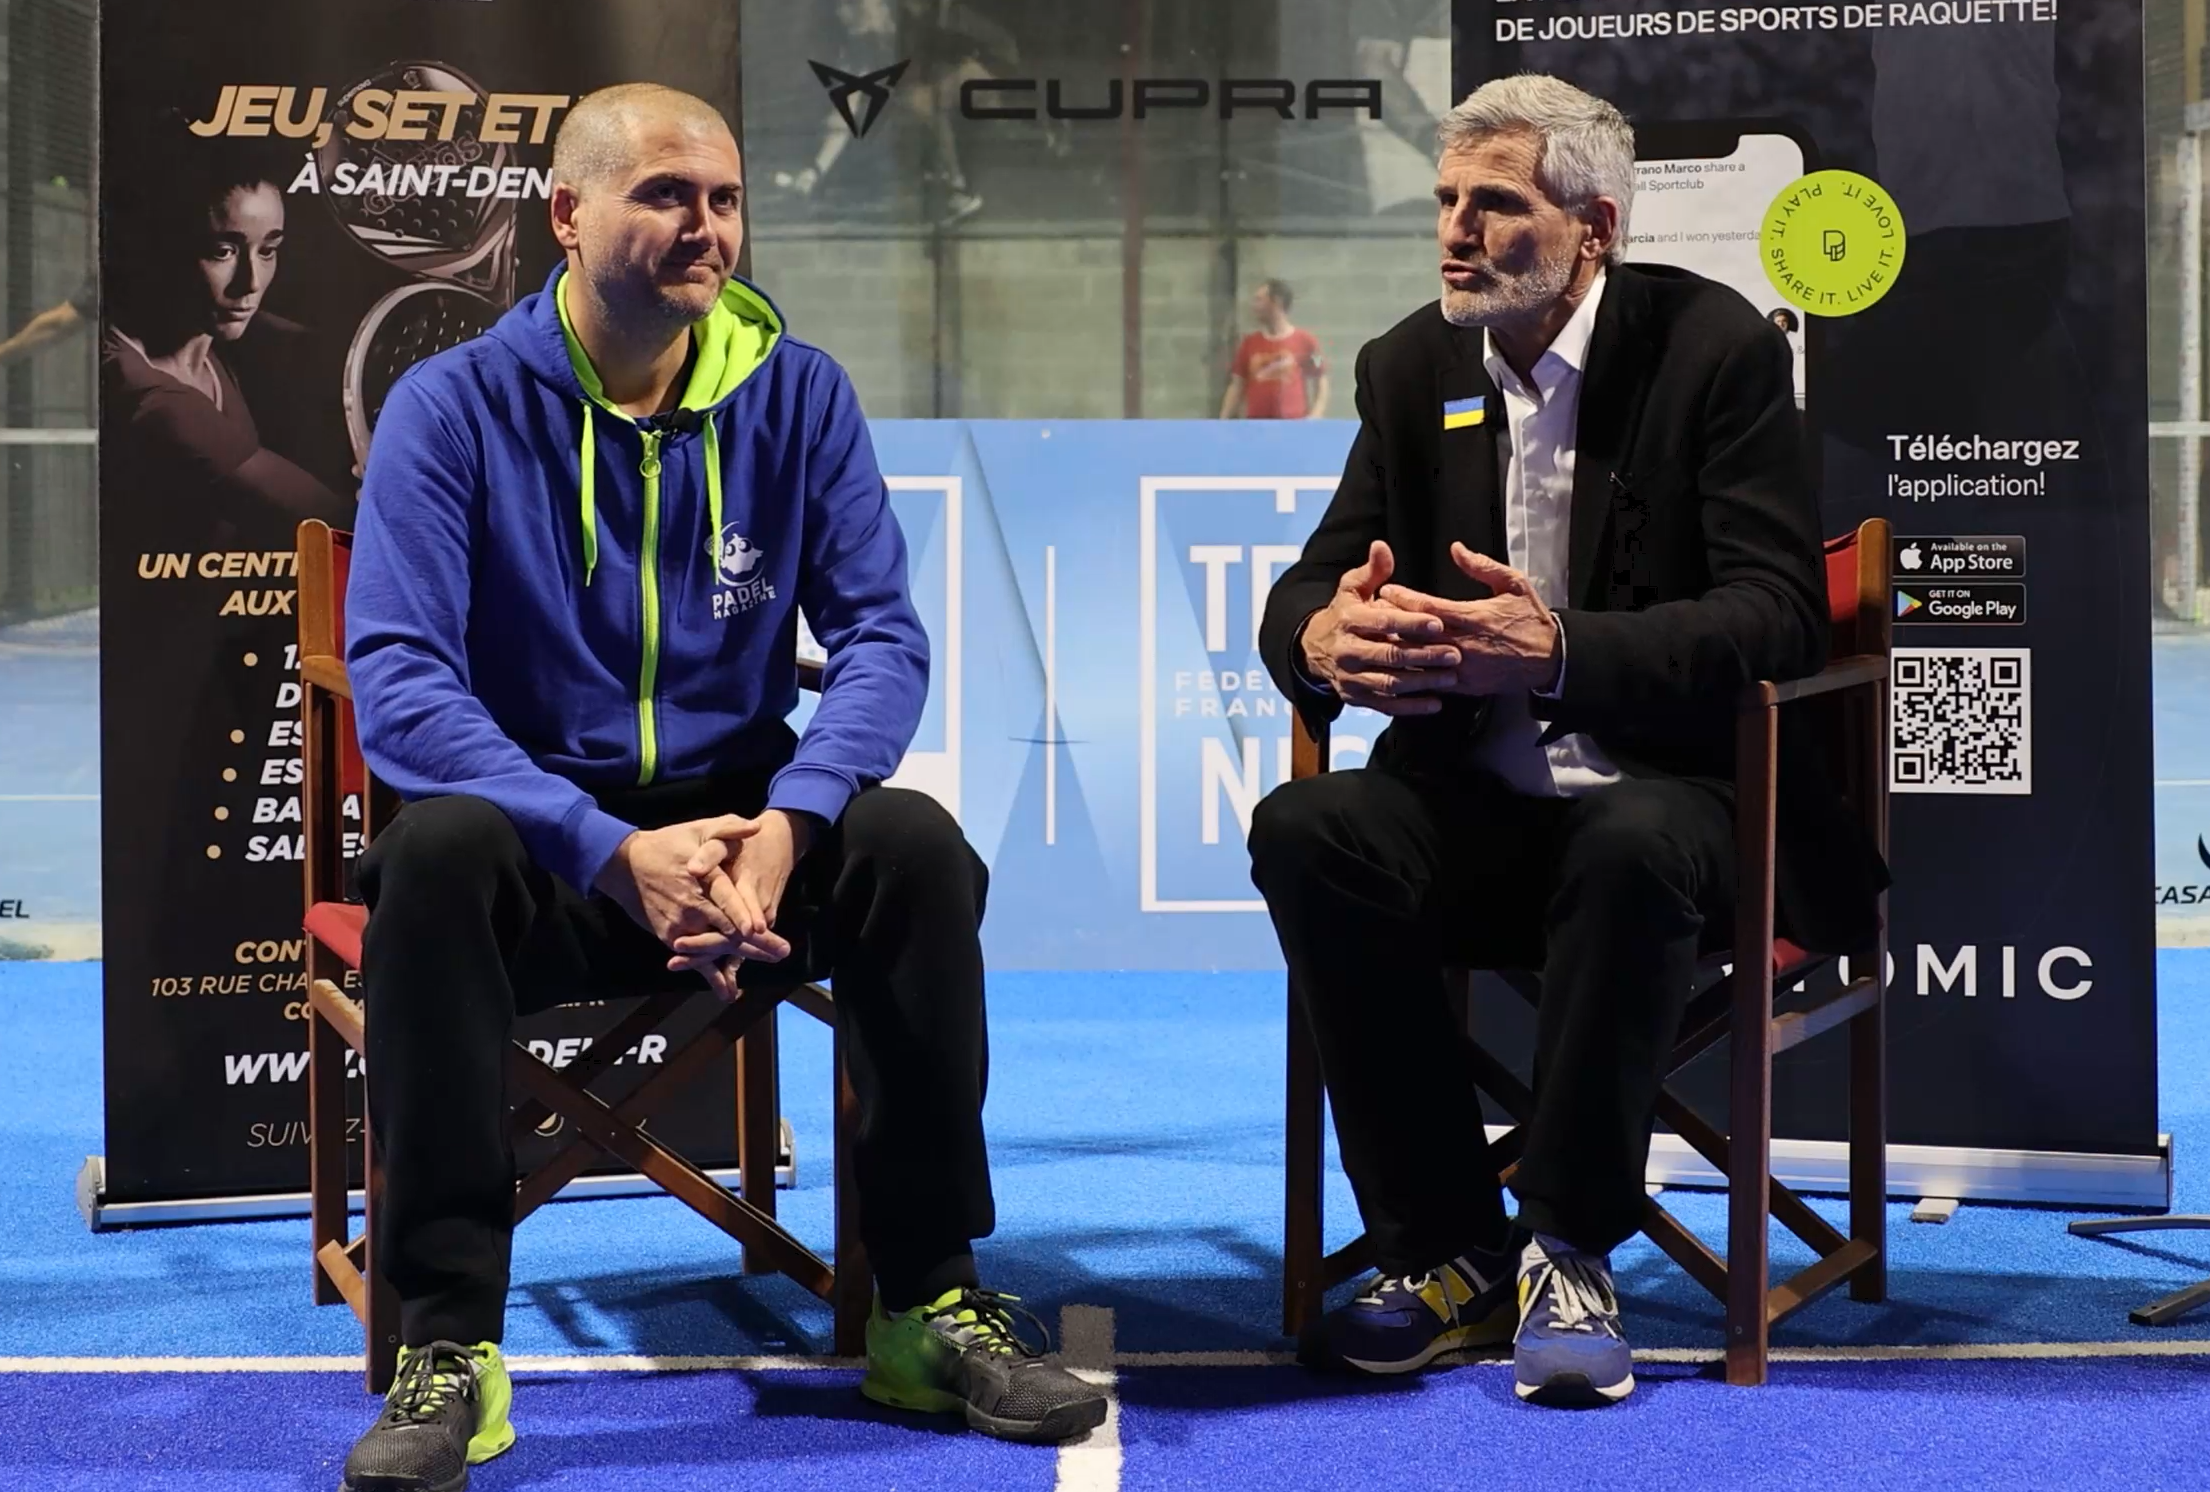 Gilles Moretton – Roland-Garros, profesionalización y desarrollo de padel